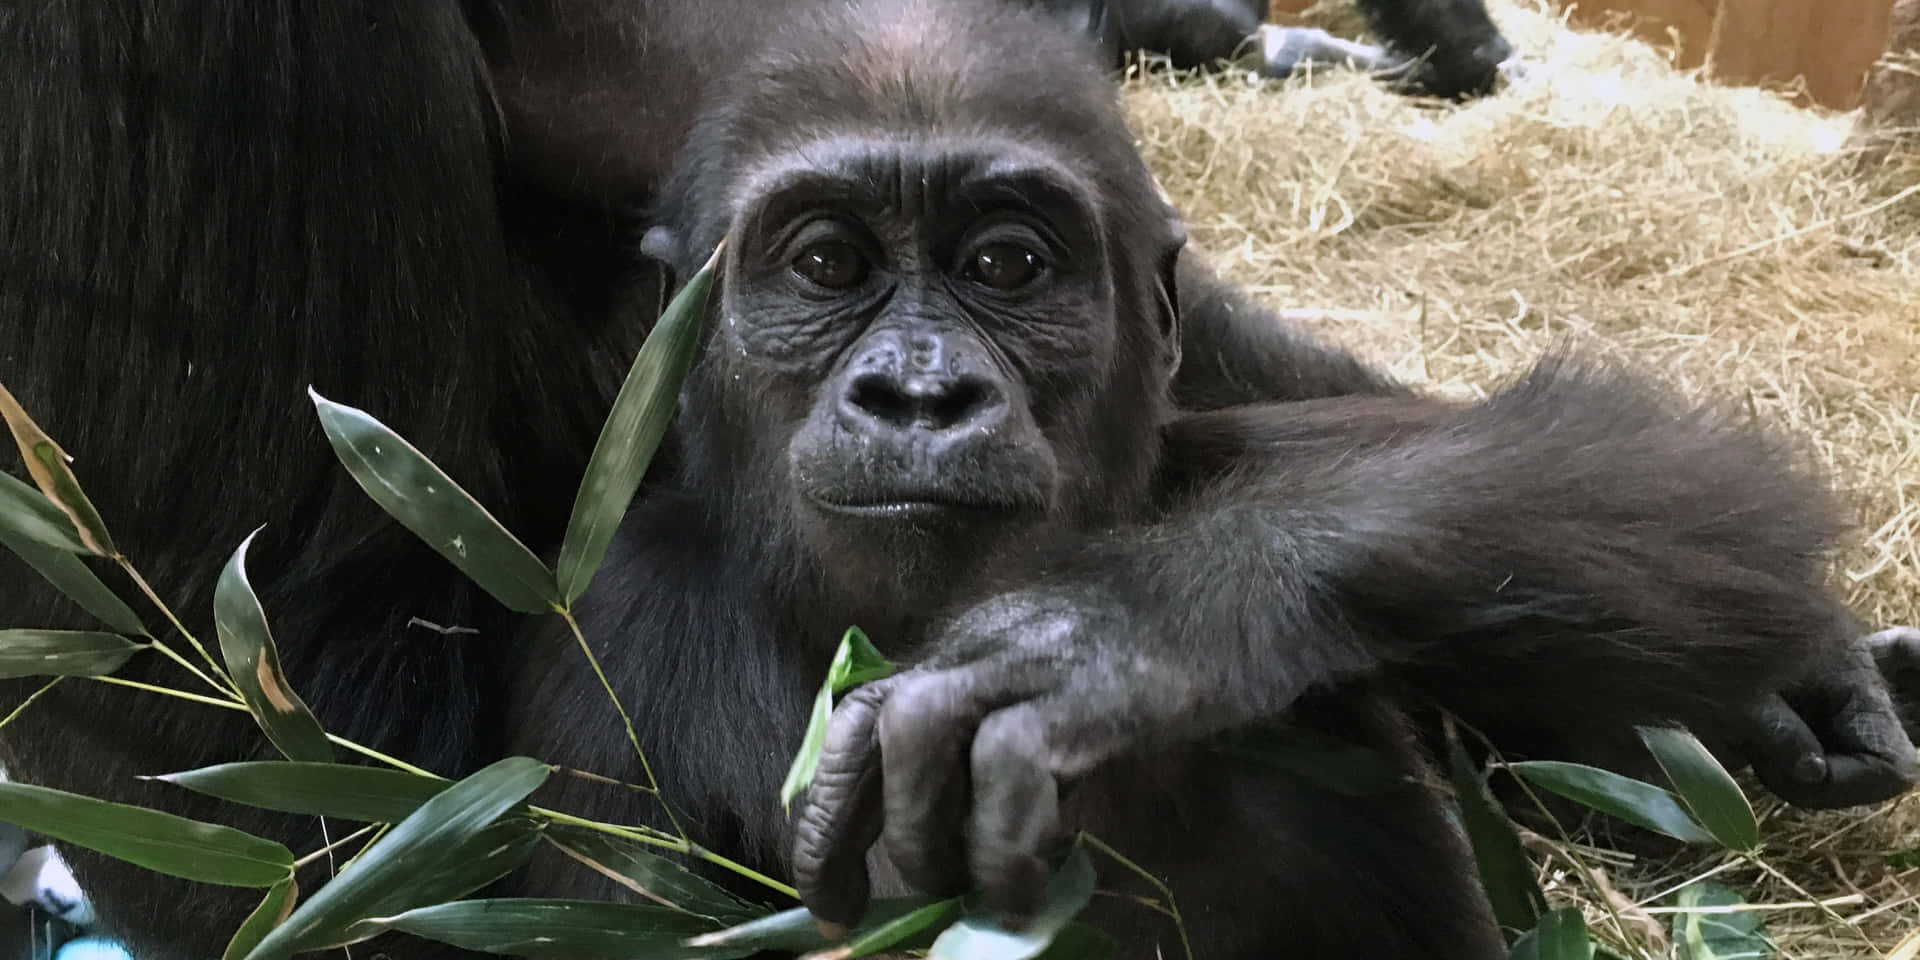 Umavisão Detalhada De Um Majestoso Gorila Em Seu Habitat Natural.